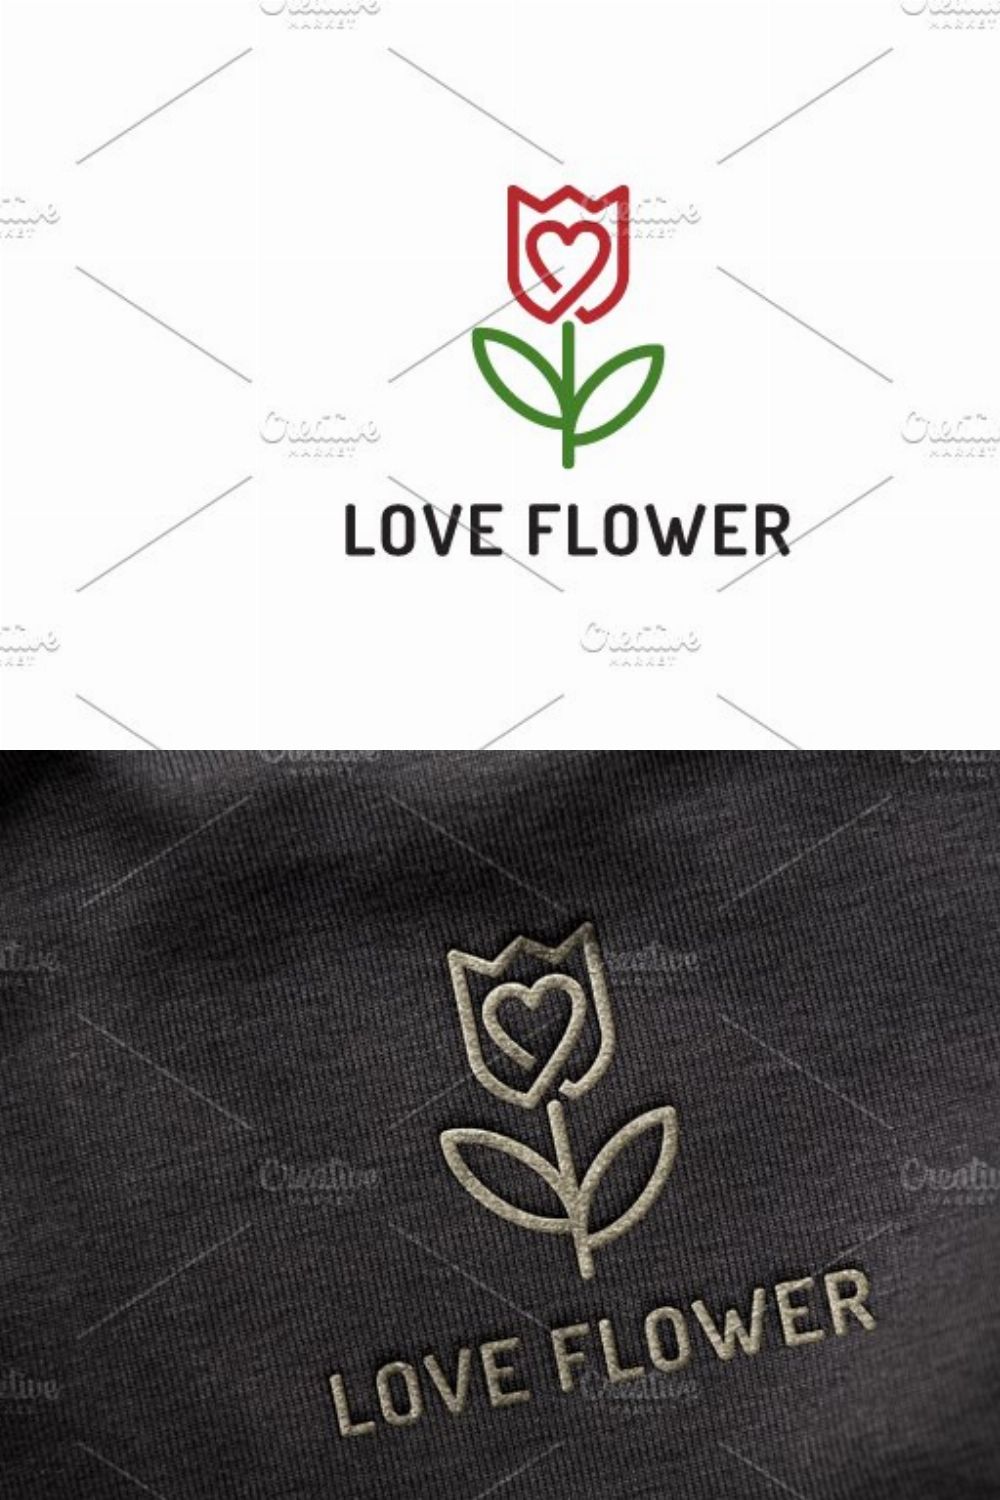 LoveFlower_logo pinterest preview image.